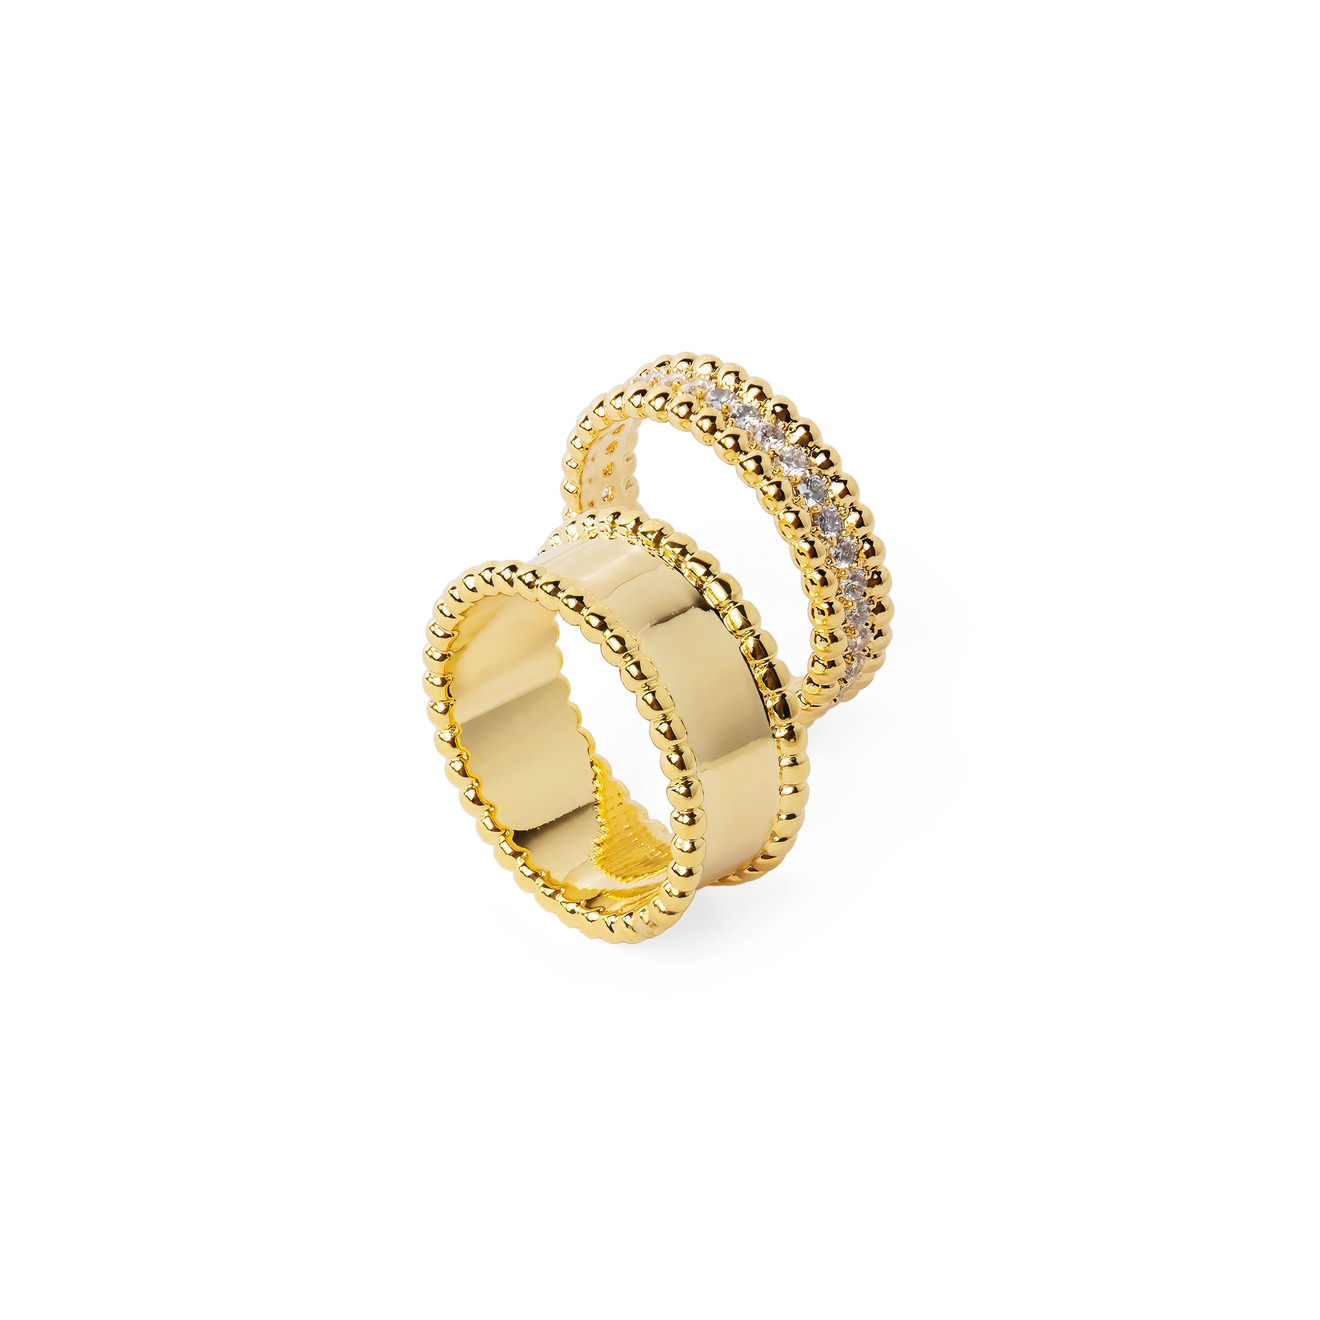 Herald Percy Сет золотистых колец с шариками и кристаллами gem kingdom сет из двух золотистых колец